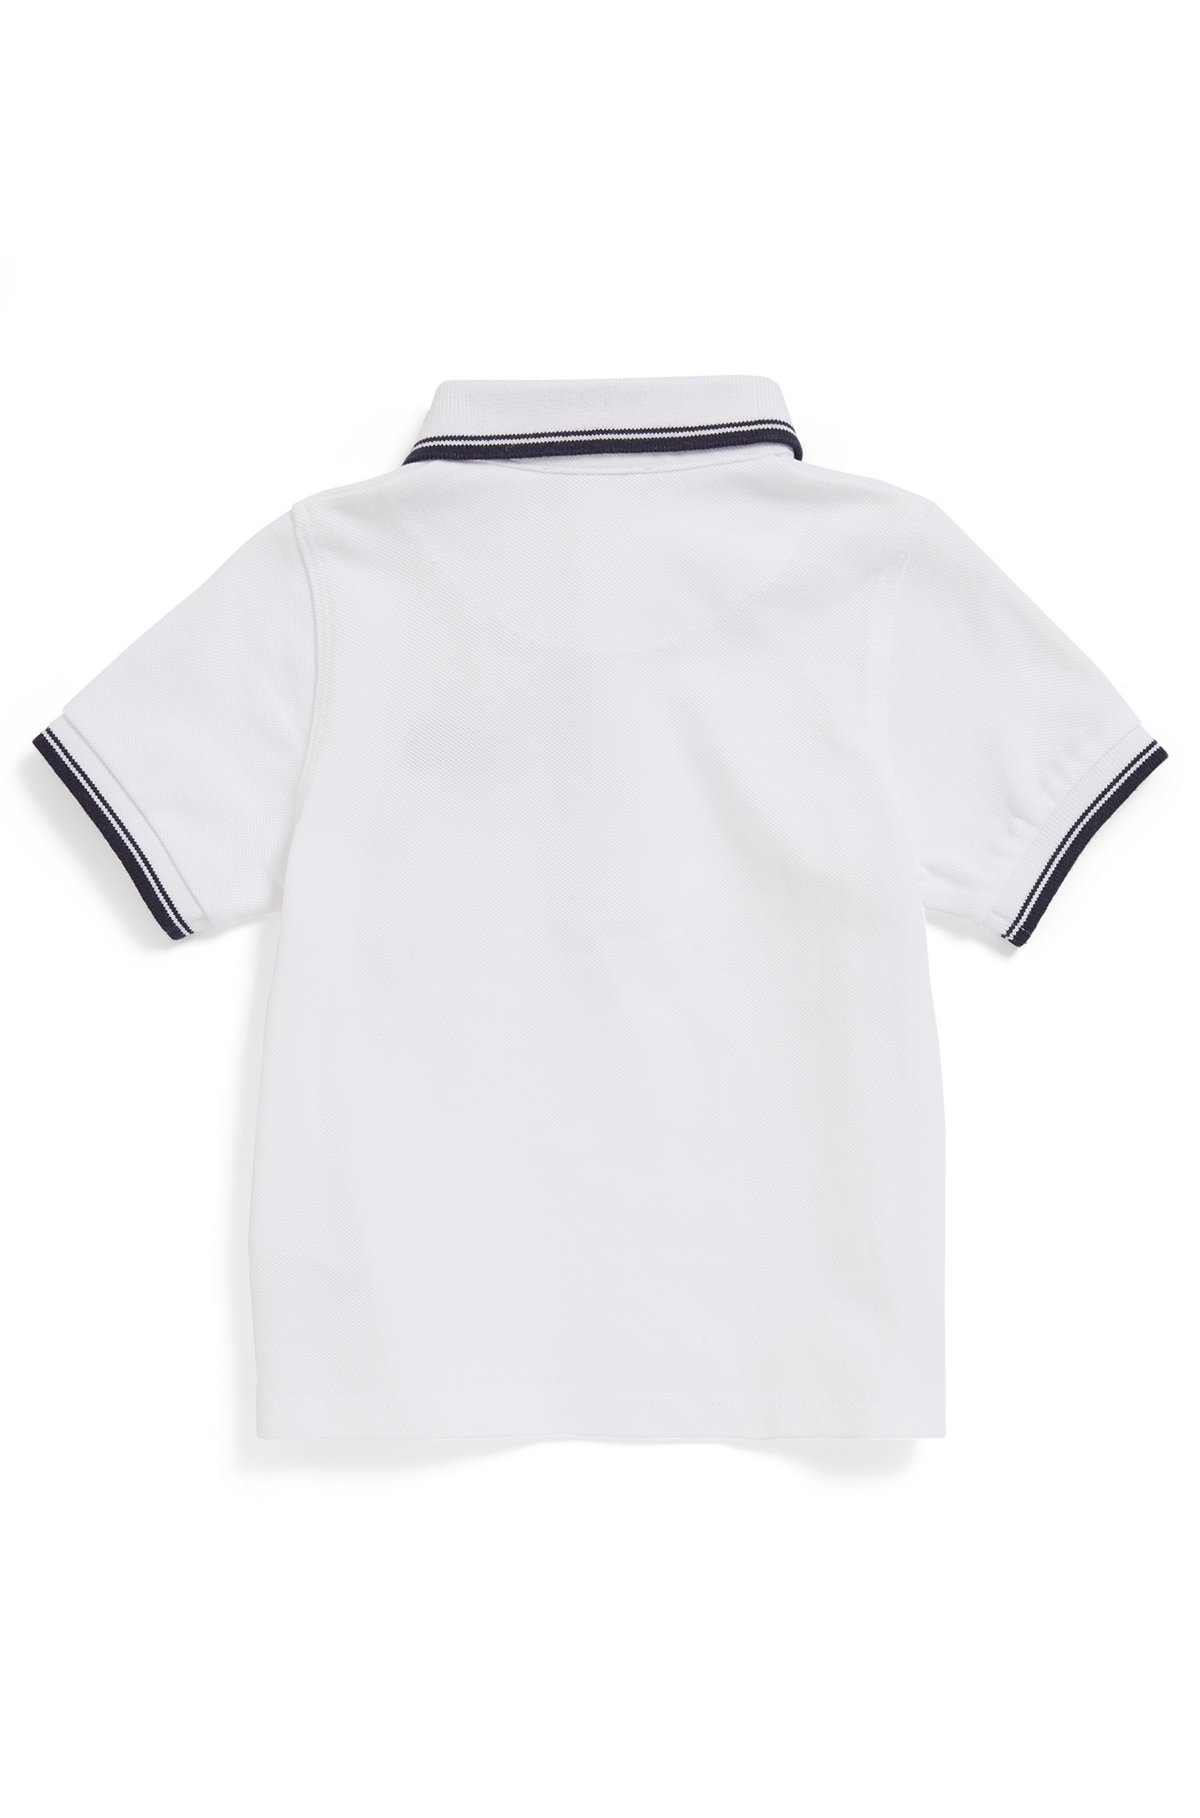 Kids-Poloshirt aus Baumwoll-Piqué mit Logo-Details, Weiß